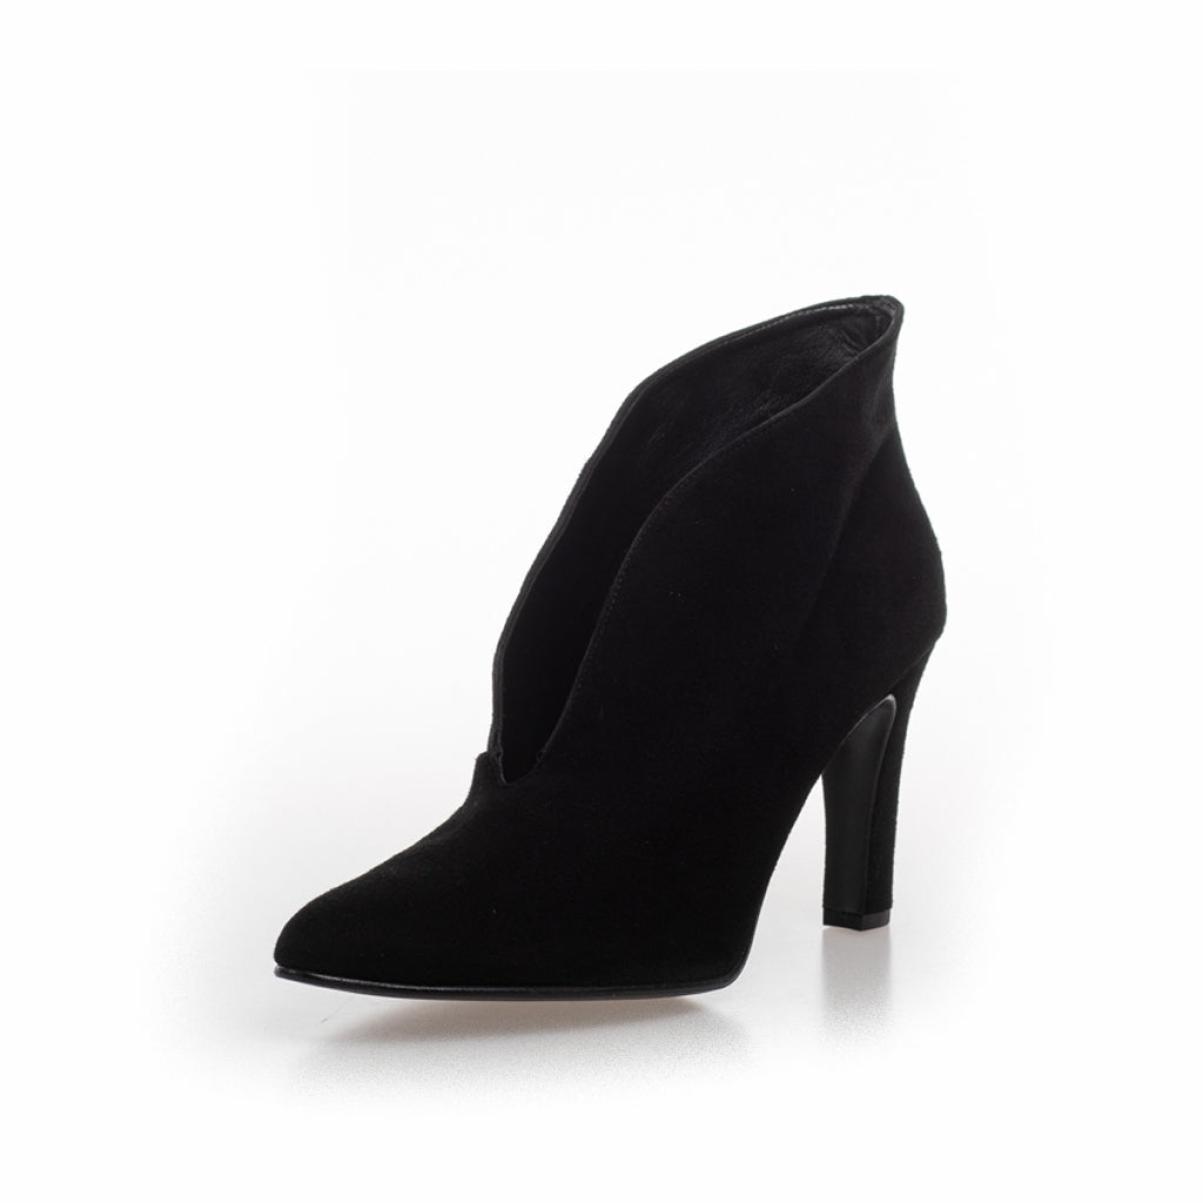 Functional Copenhagen Shoes Sus 21 - Black Women Ankle Boots - 2